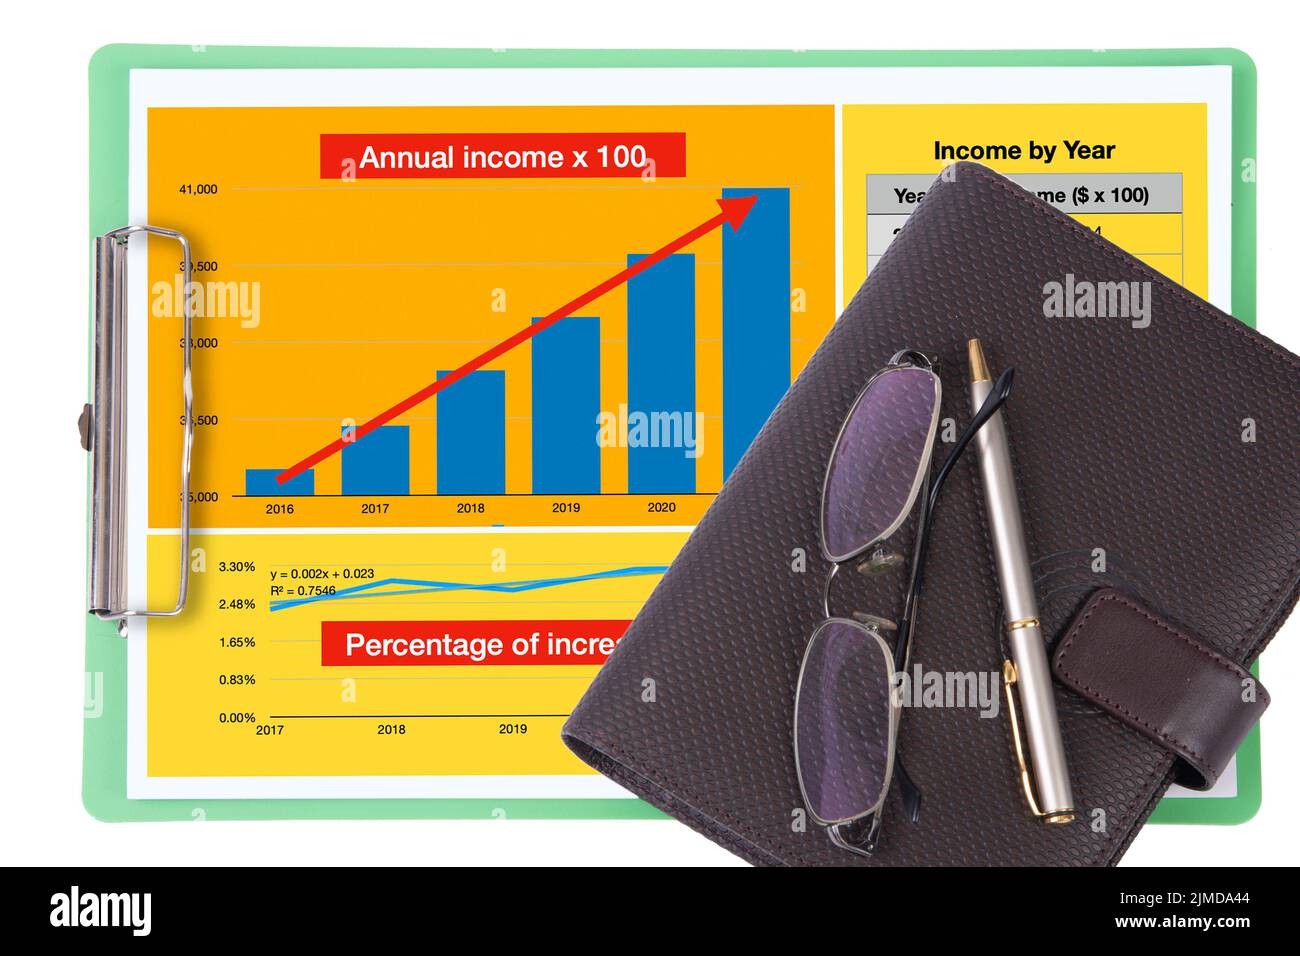 La bozza di documento di analisi annuale del reddito mostra la crescita dell'azienda che ha bloccato gli appunti è posta sotto alcuni accessori e notebook. Foto Stock